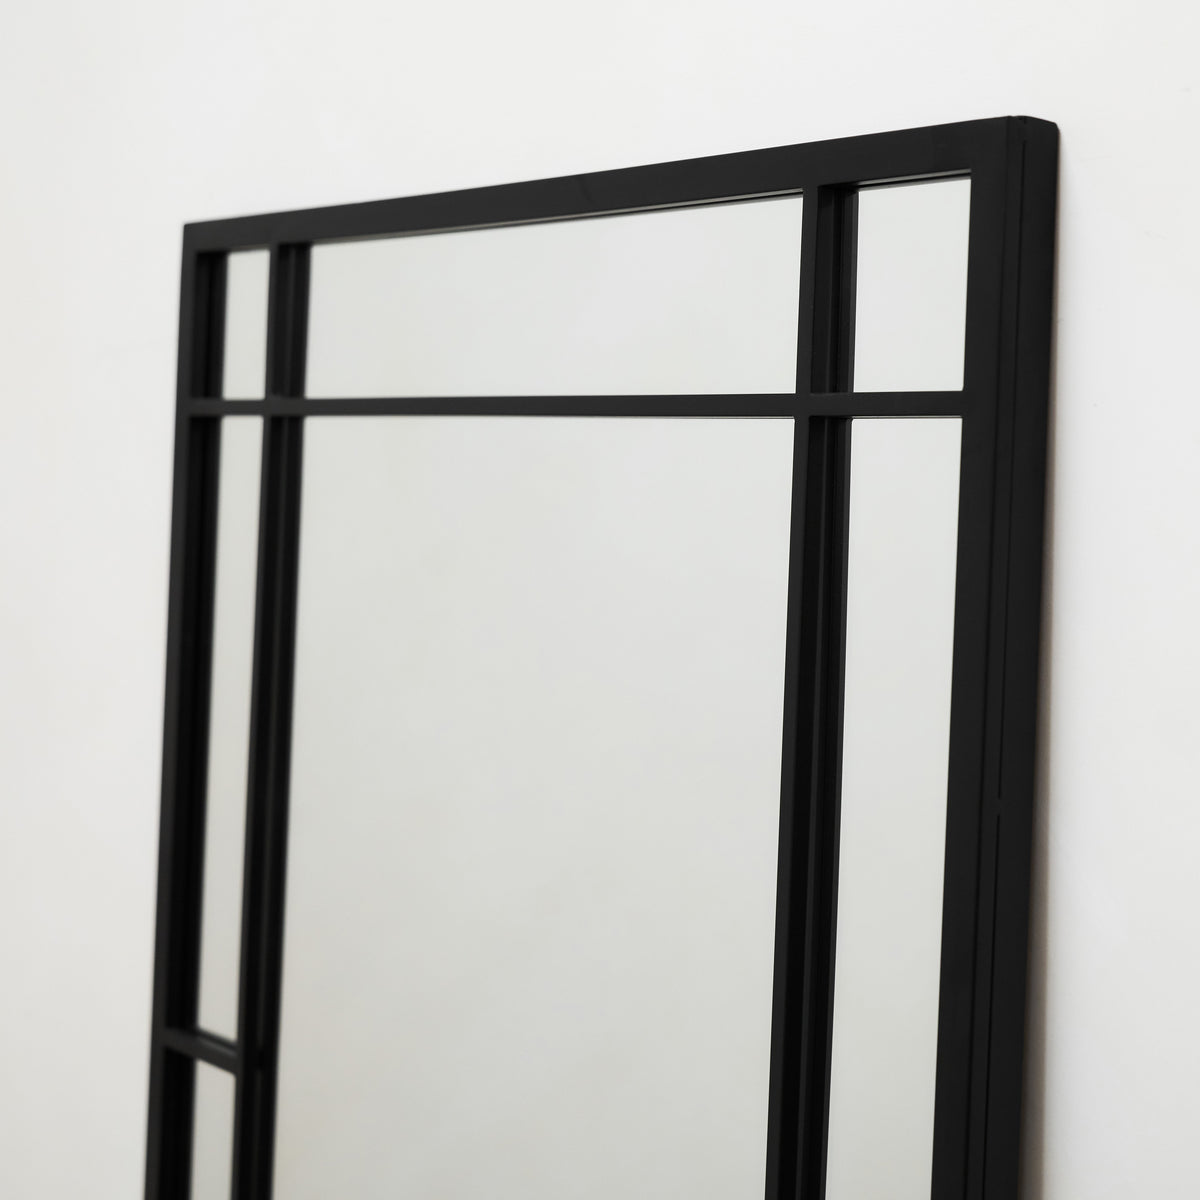 Bexley - Miroir mural industriel rectangulaire en métal noir 100 cm x 70 cm